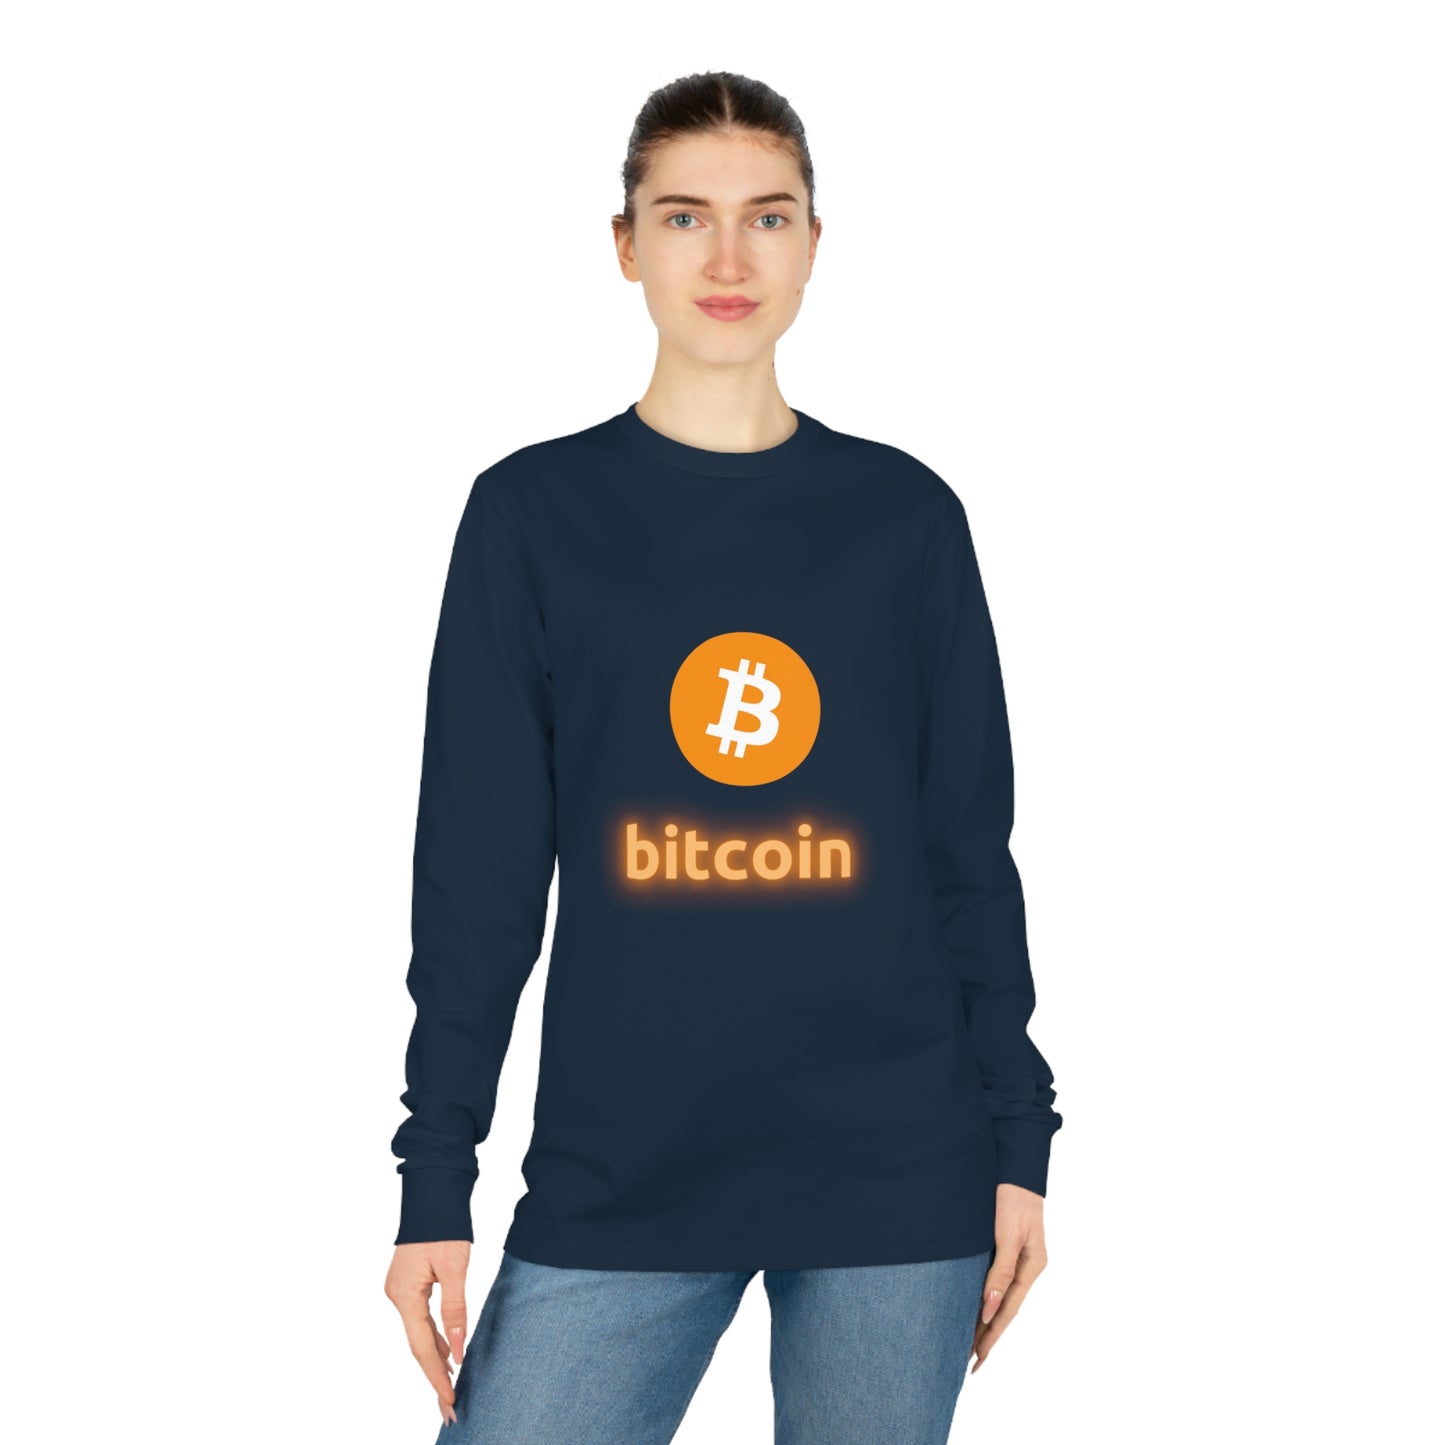 Bitcoin pitkähihainen T-paita